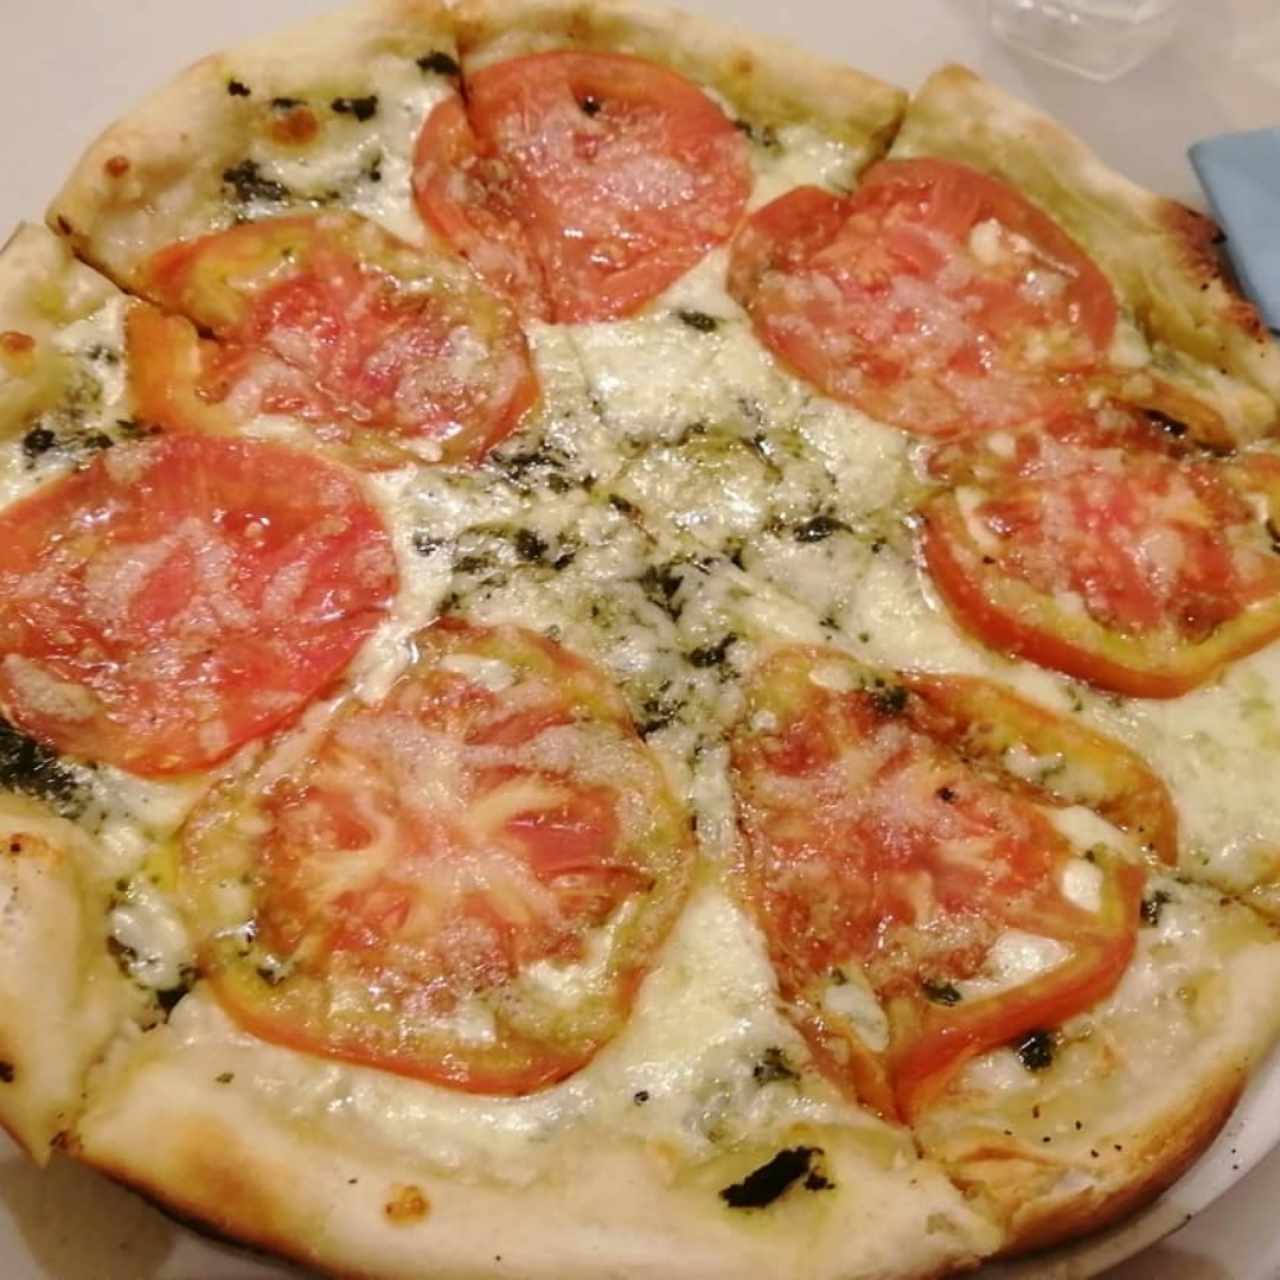 larrys pizza